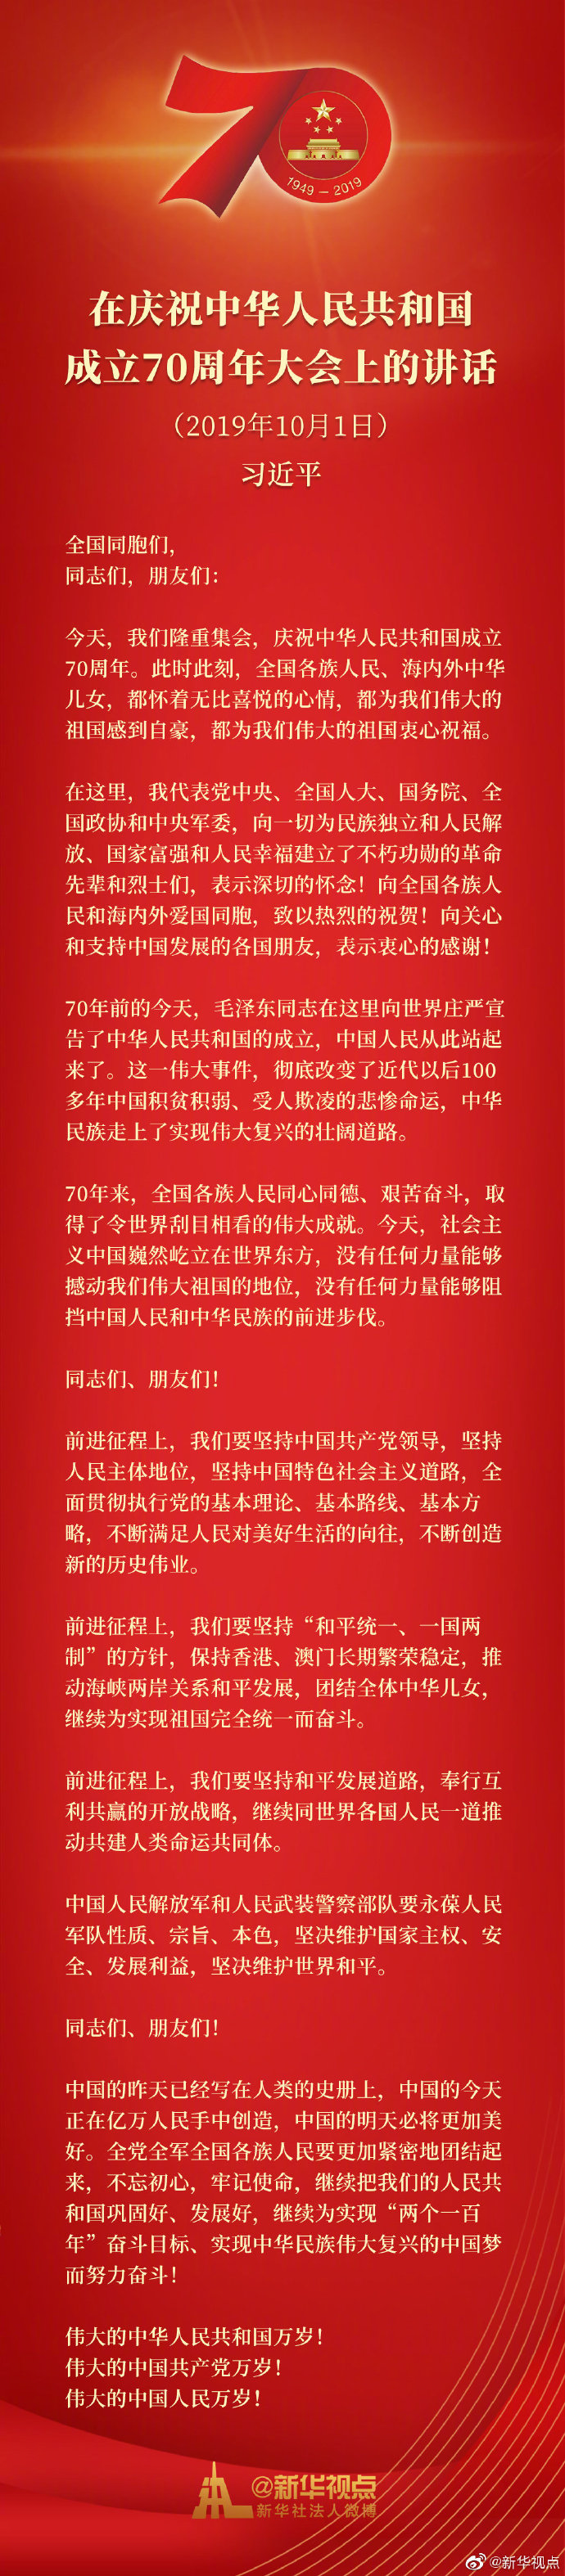 习近平在庆祝中华人民共和国成立70周年大会上的讲话